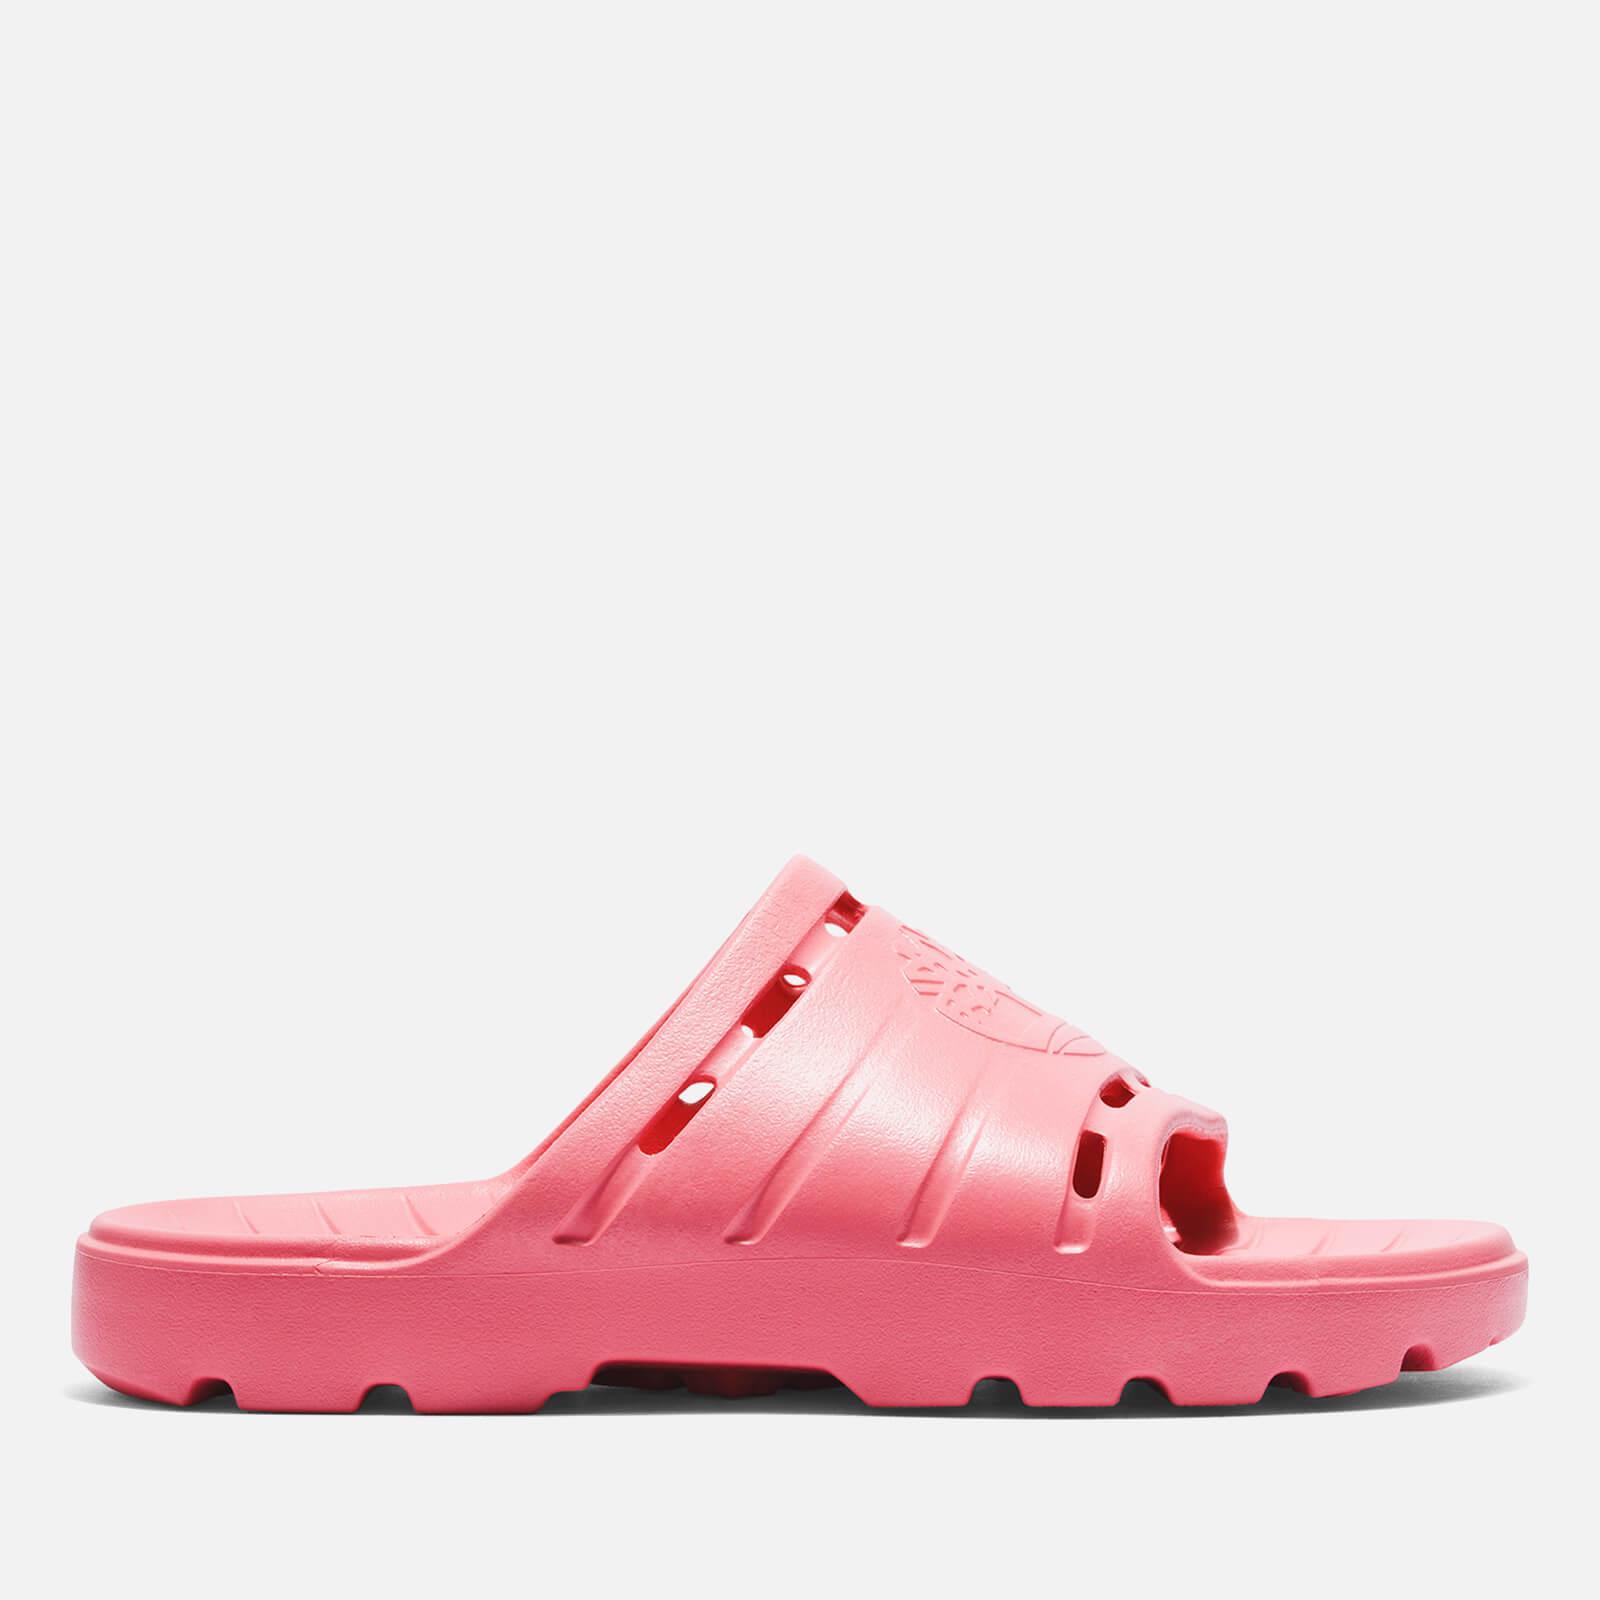 Timberland Get Outslide Eva Slide Sandals in Pink | Lyst